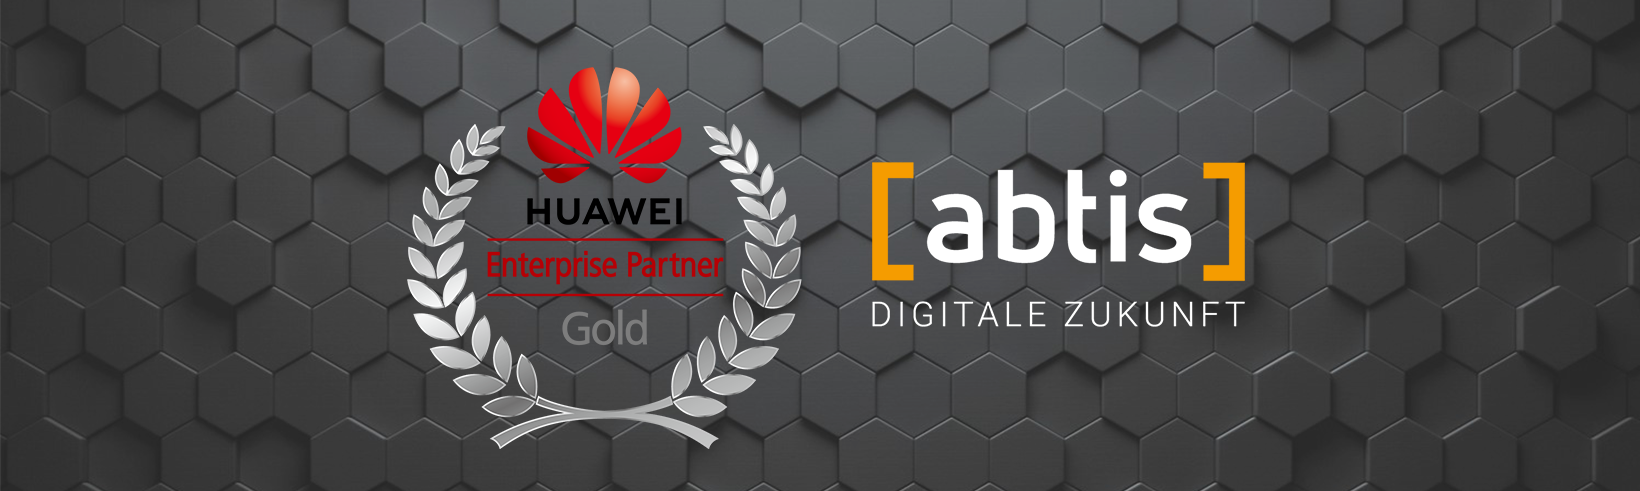 abtis ist Huawei Enterprise Partner Gold